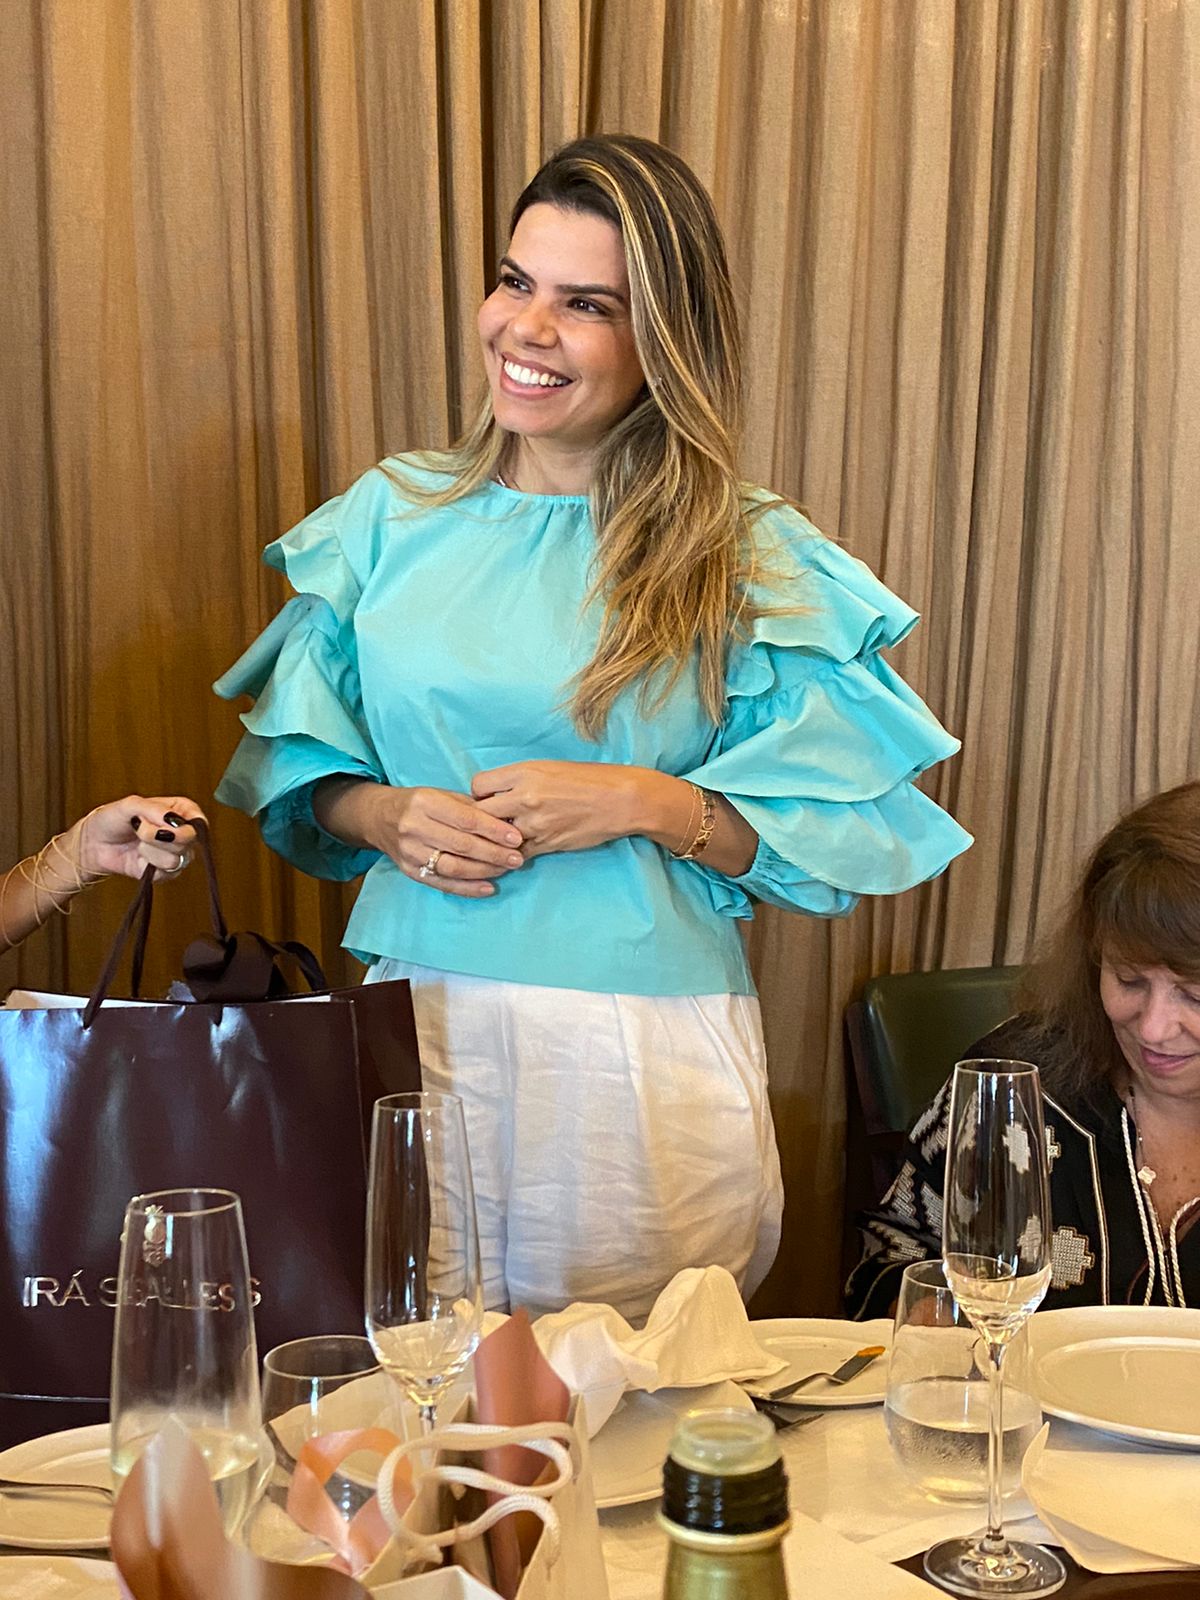 Alana Tinoco comemora aniversário com almoço no Fasano Salvador 